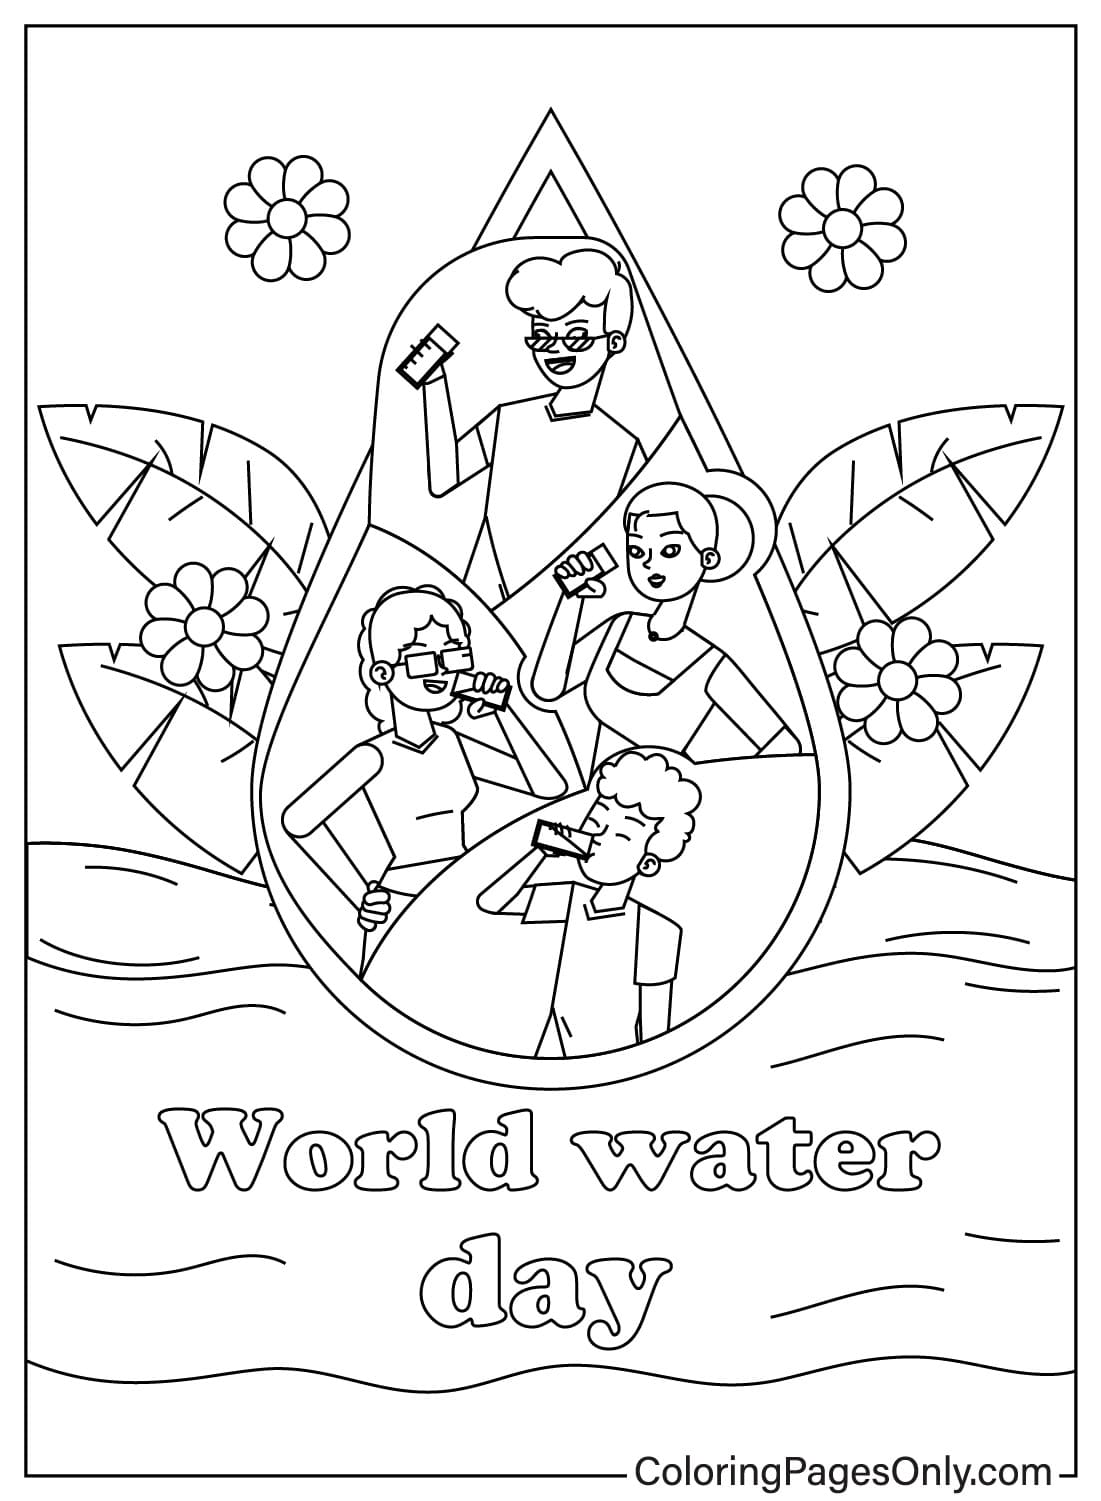 Foglio da colorare per bambini sulla Giornata mondiale dell'acqua dalla Giornata mondiale dell'acqua